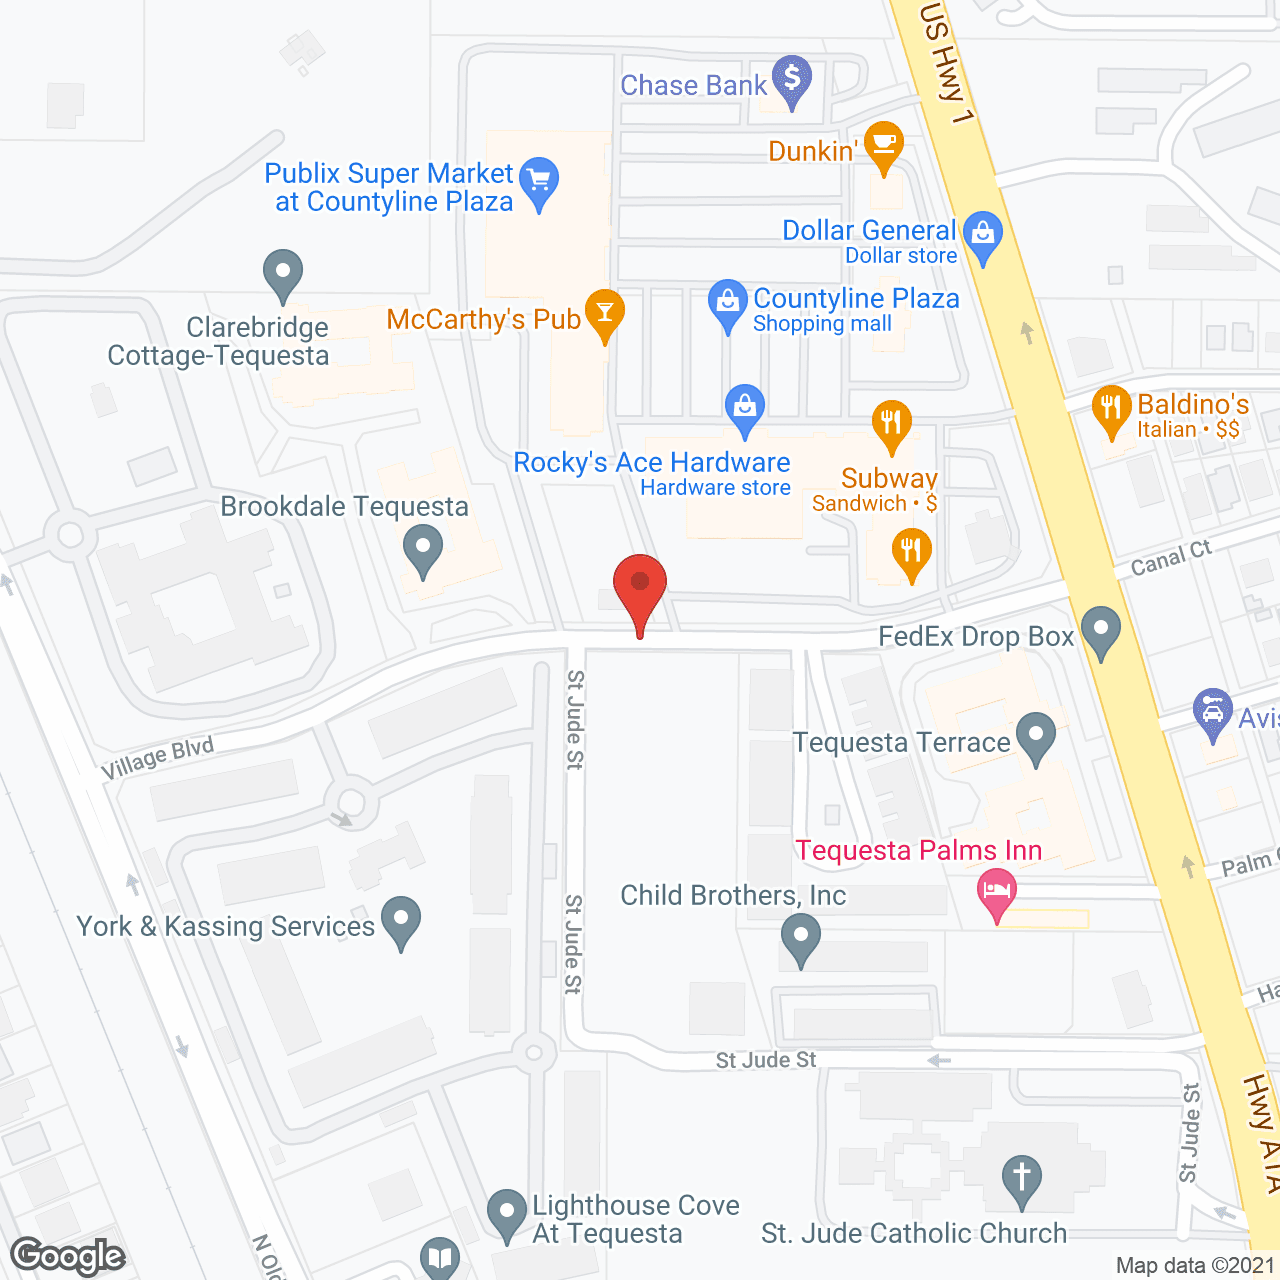 Brookdale Tequesta MC in google map